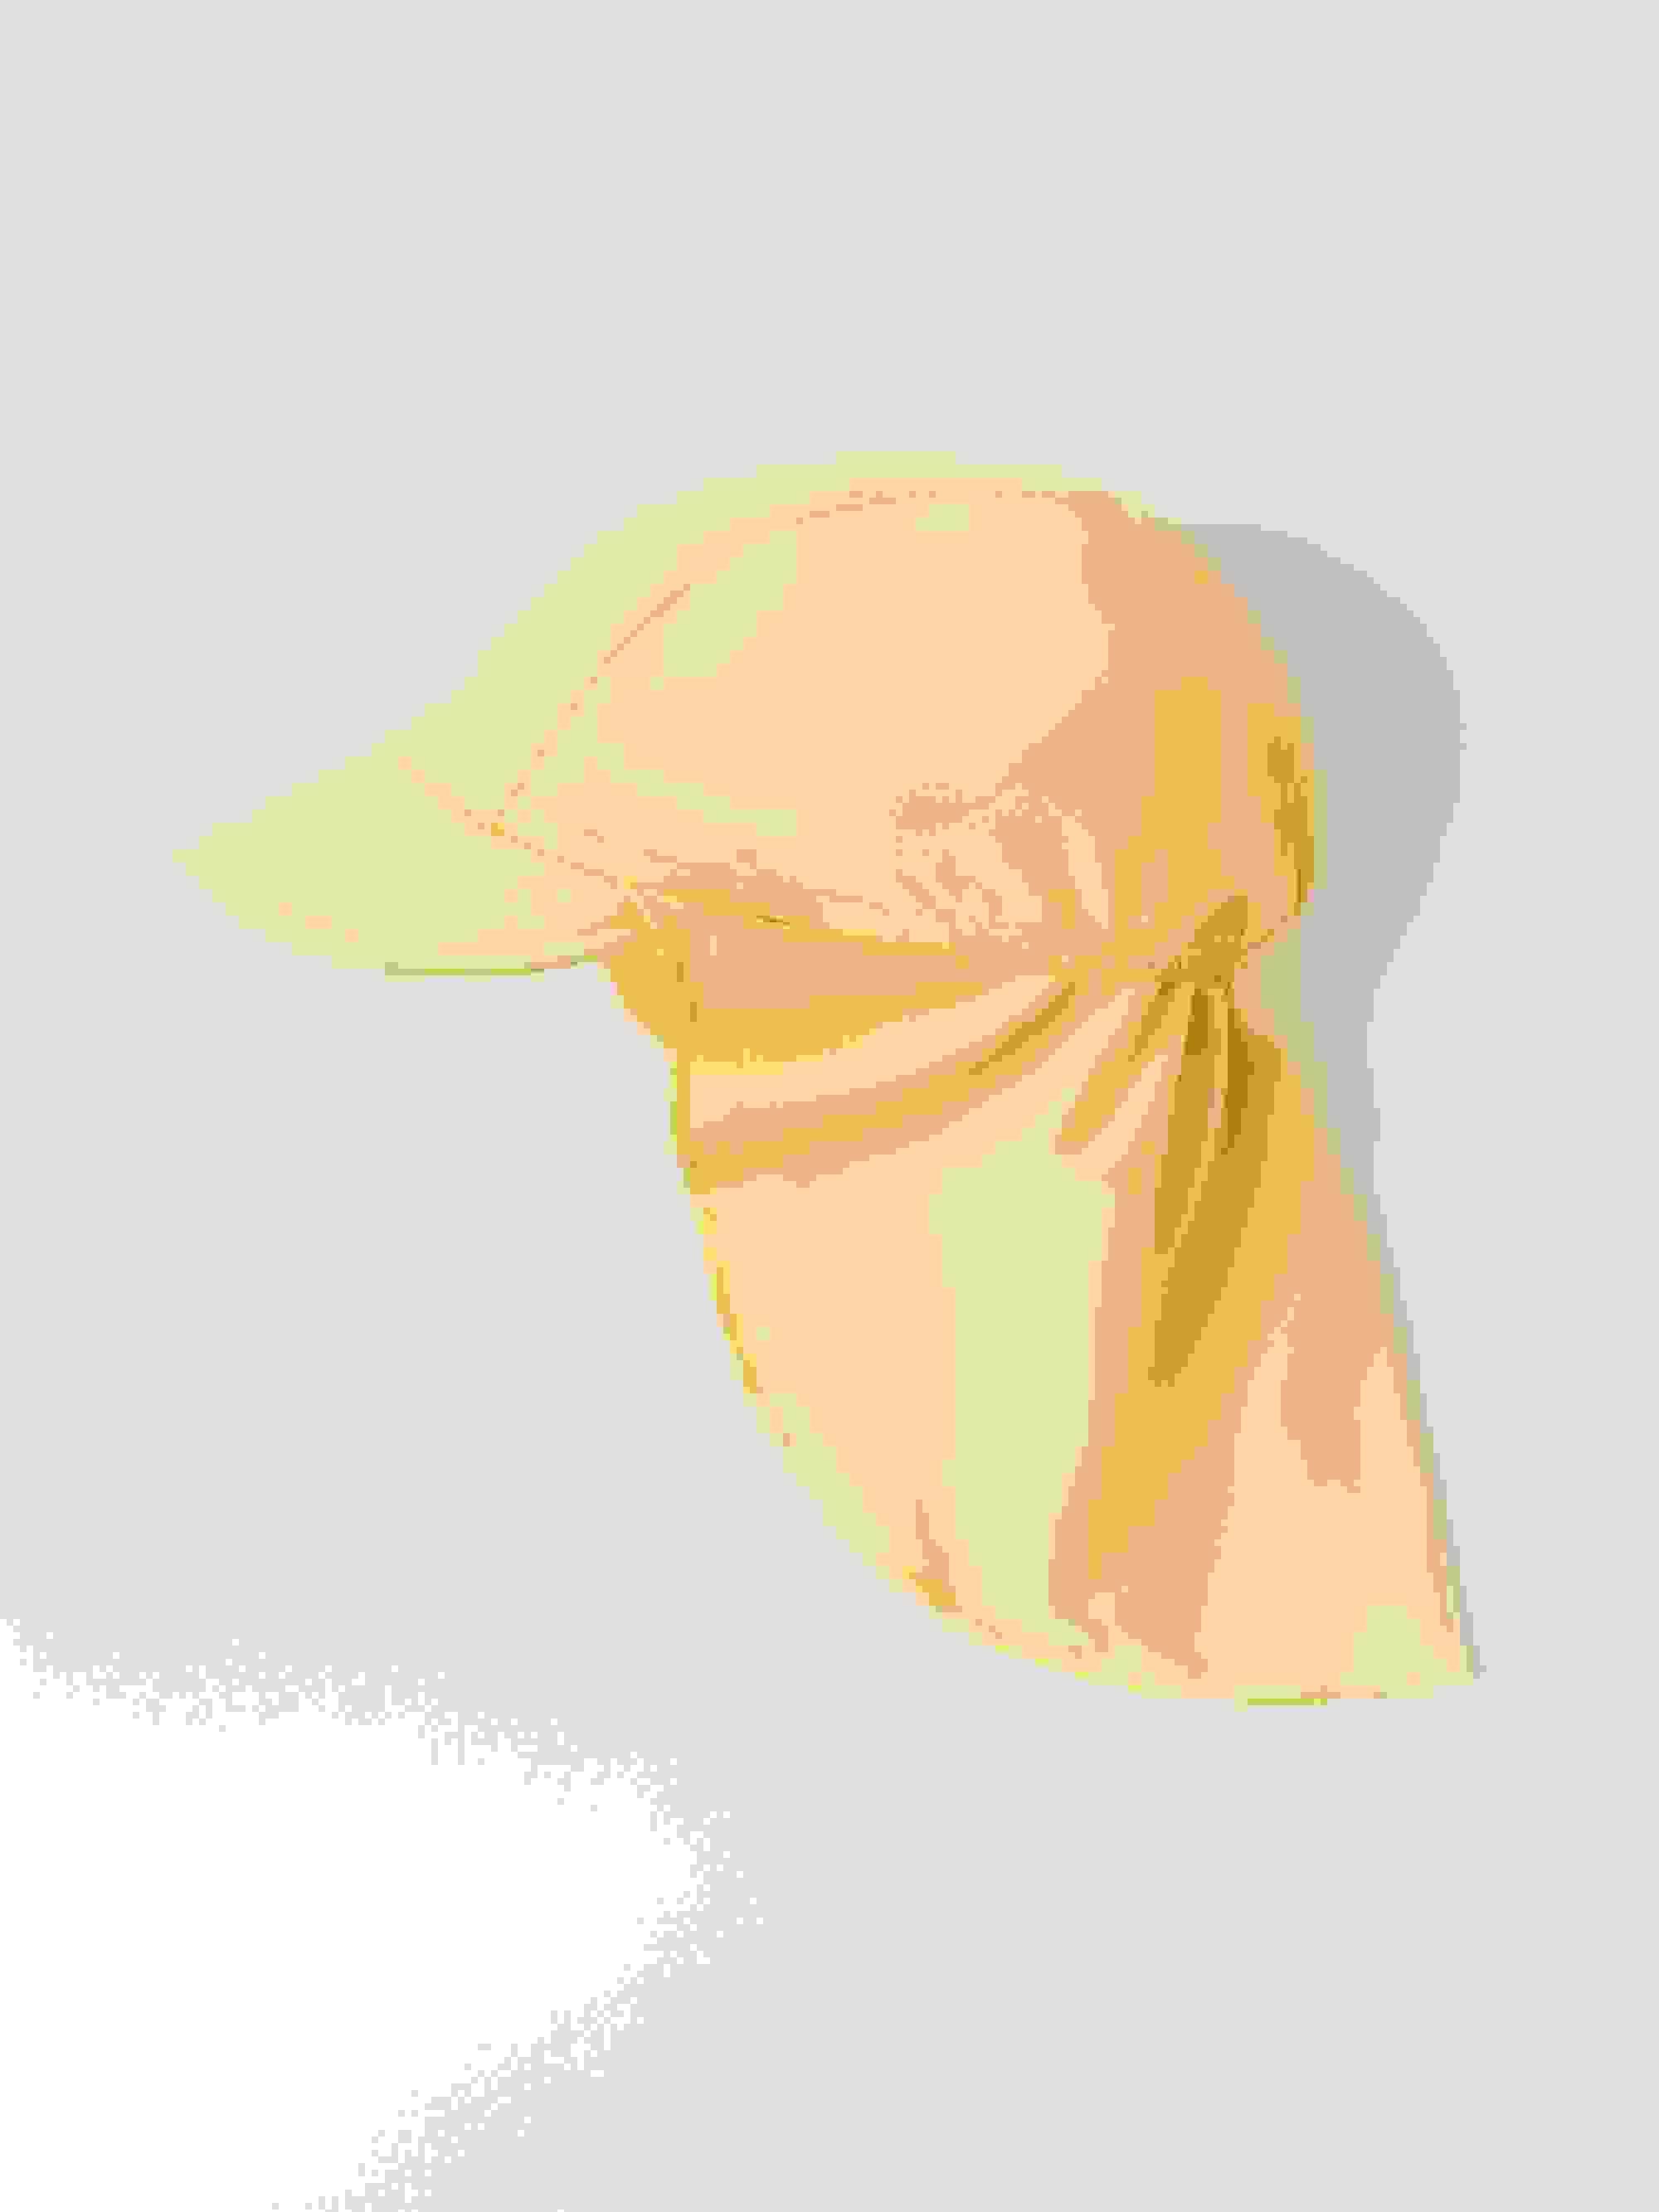 UV-Kappe mit Nackenschutz, einfarbig